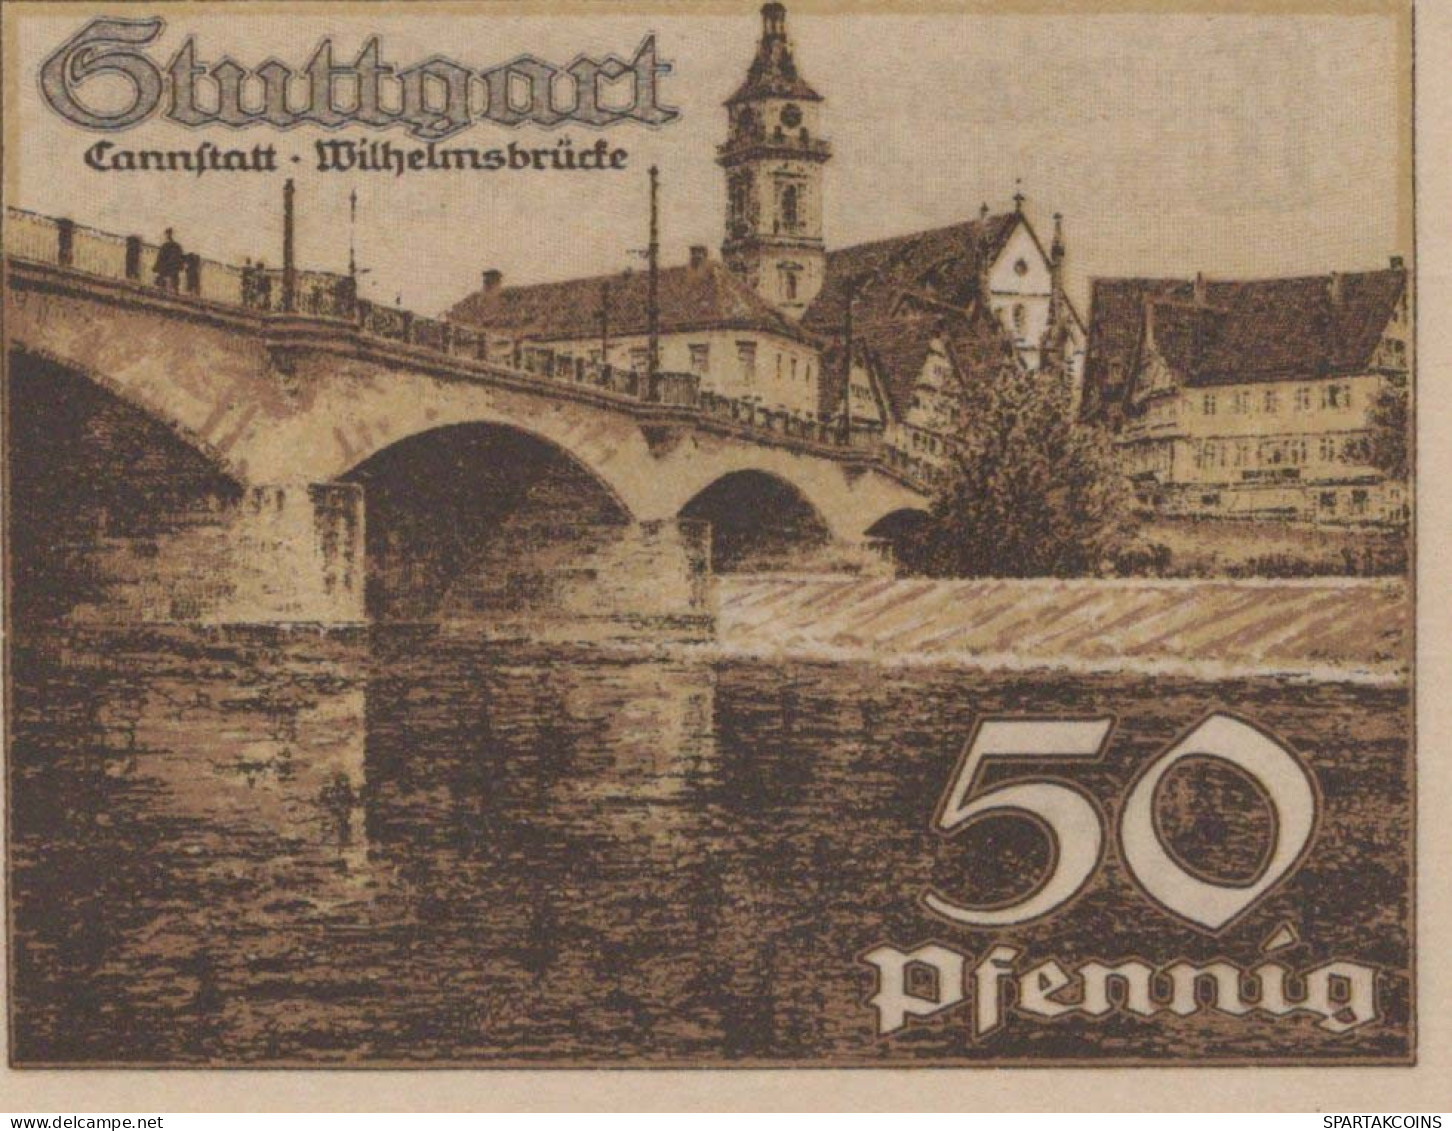 50 PFENNIG 1921 Stadt STUTTGART Württemberg UNC DEUTSCHLAND Notgeld #PC423 - Lokale Ausgaben